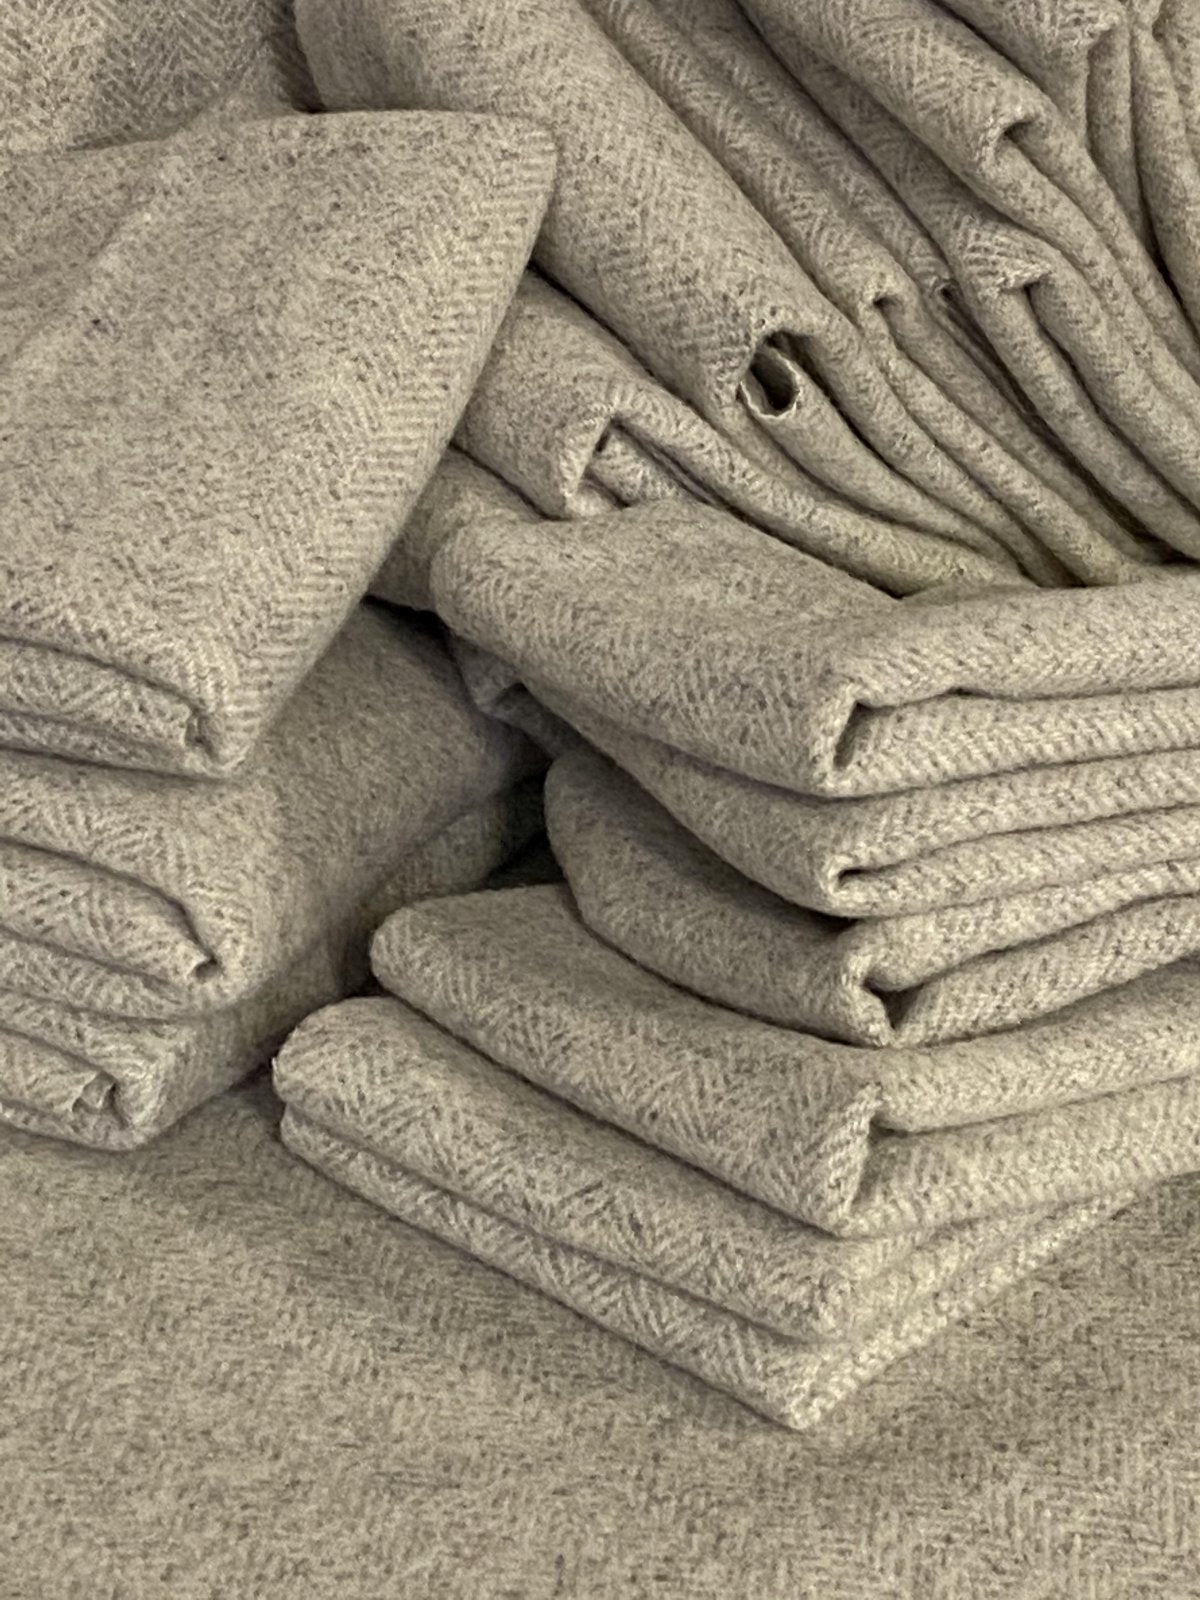 100% Wool Fabric - Ewe Know